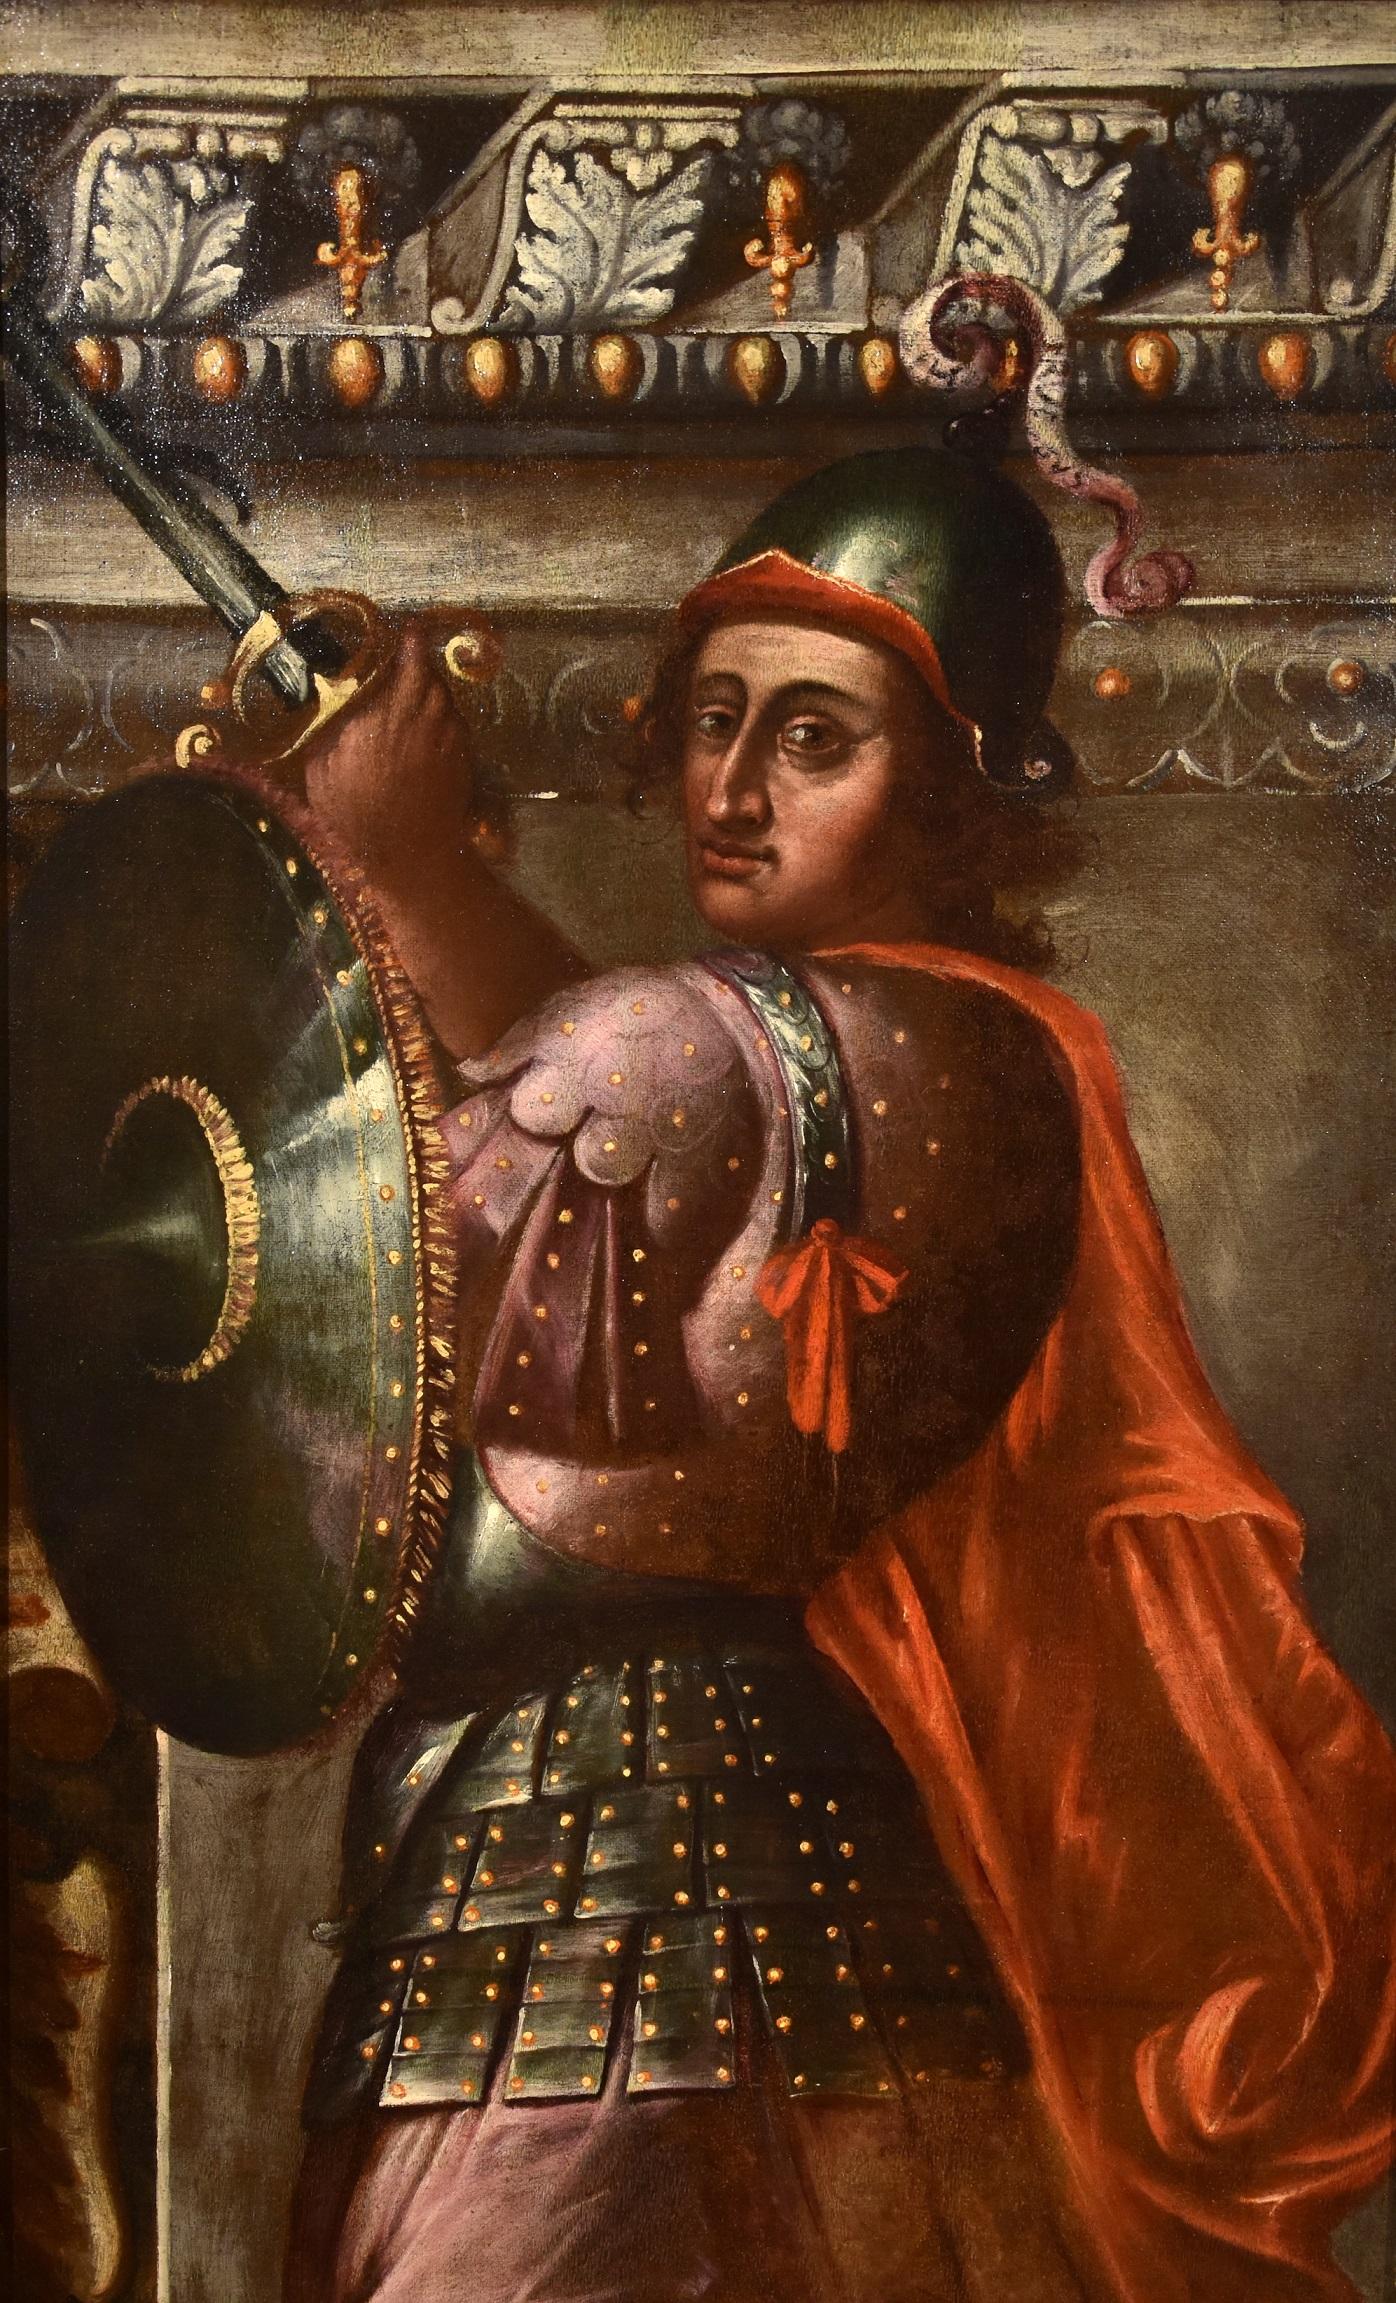 Allegory Man Fortress Stella Gemälde Öl auf Leinwand Alter Meister 16./17. Jahrhundert Kunst (Braun), Portrait Painting, von Giacomo Stella (Brescia 1545 - Rome 1630)